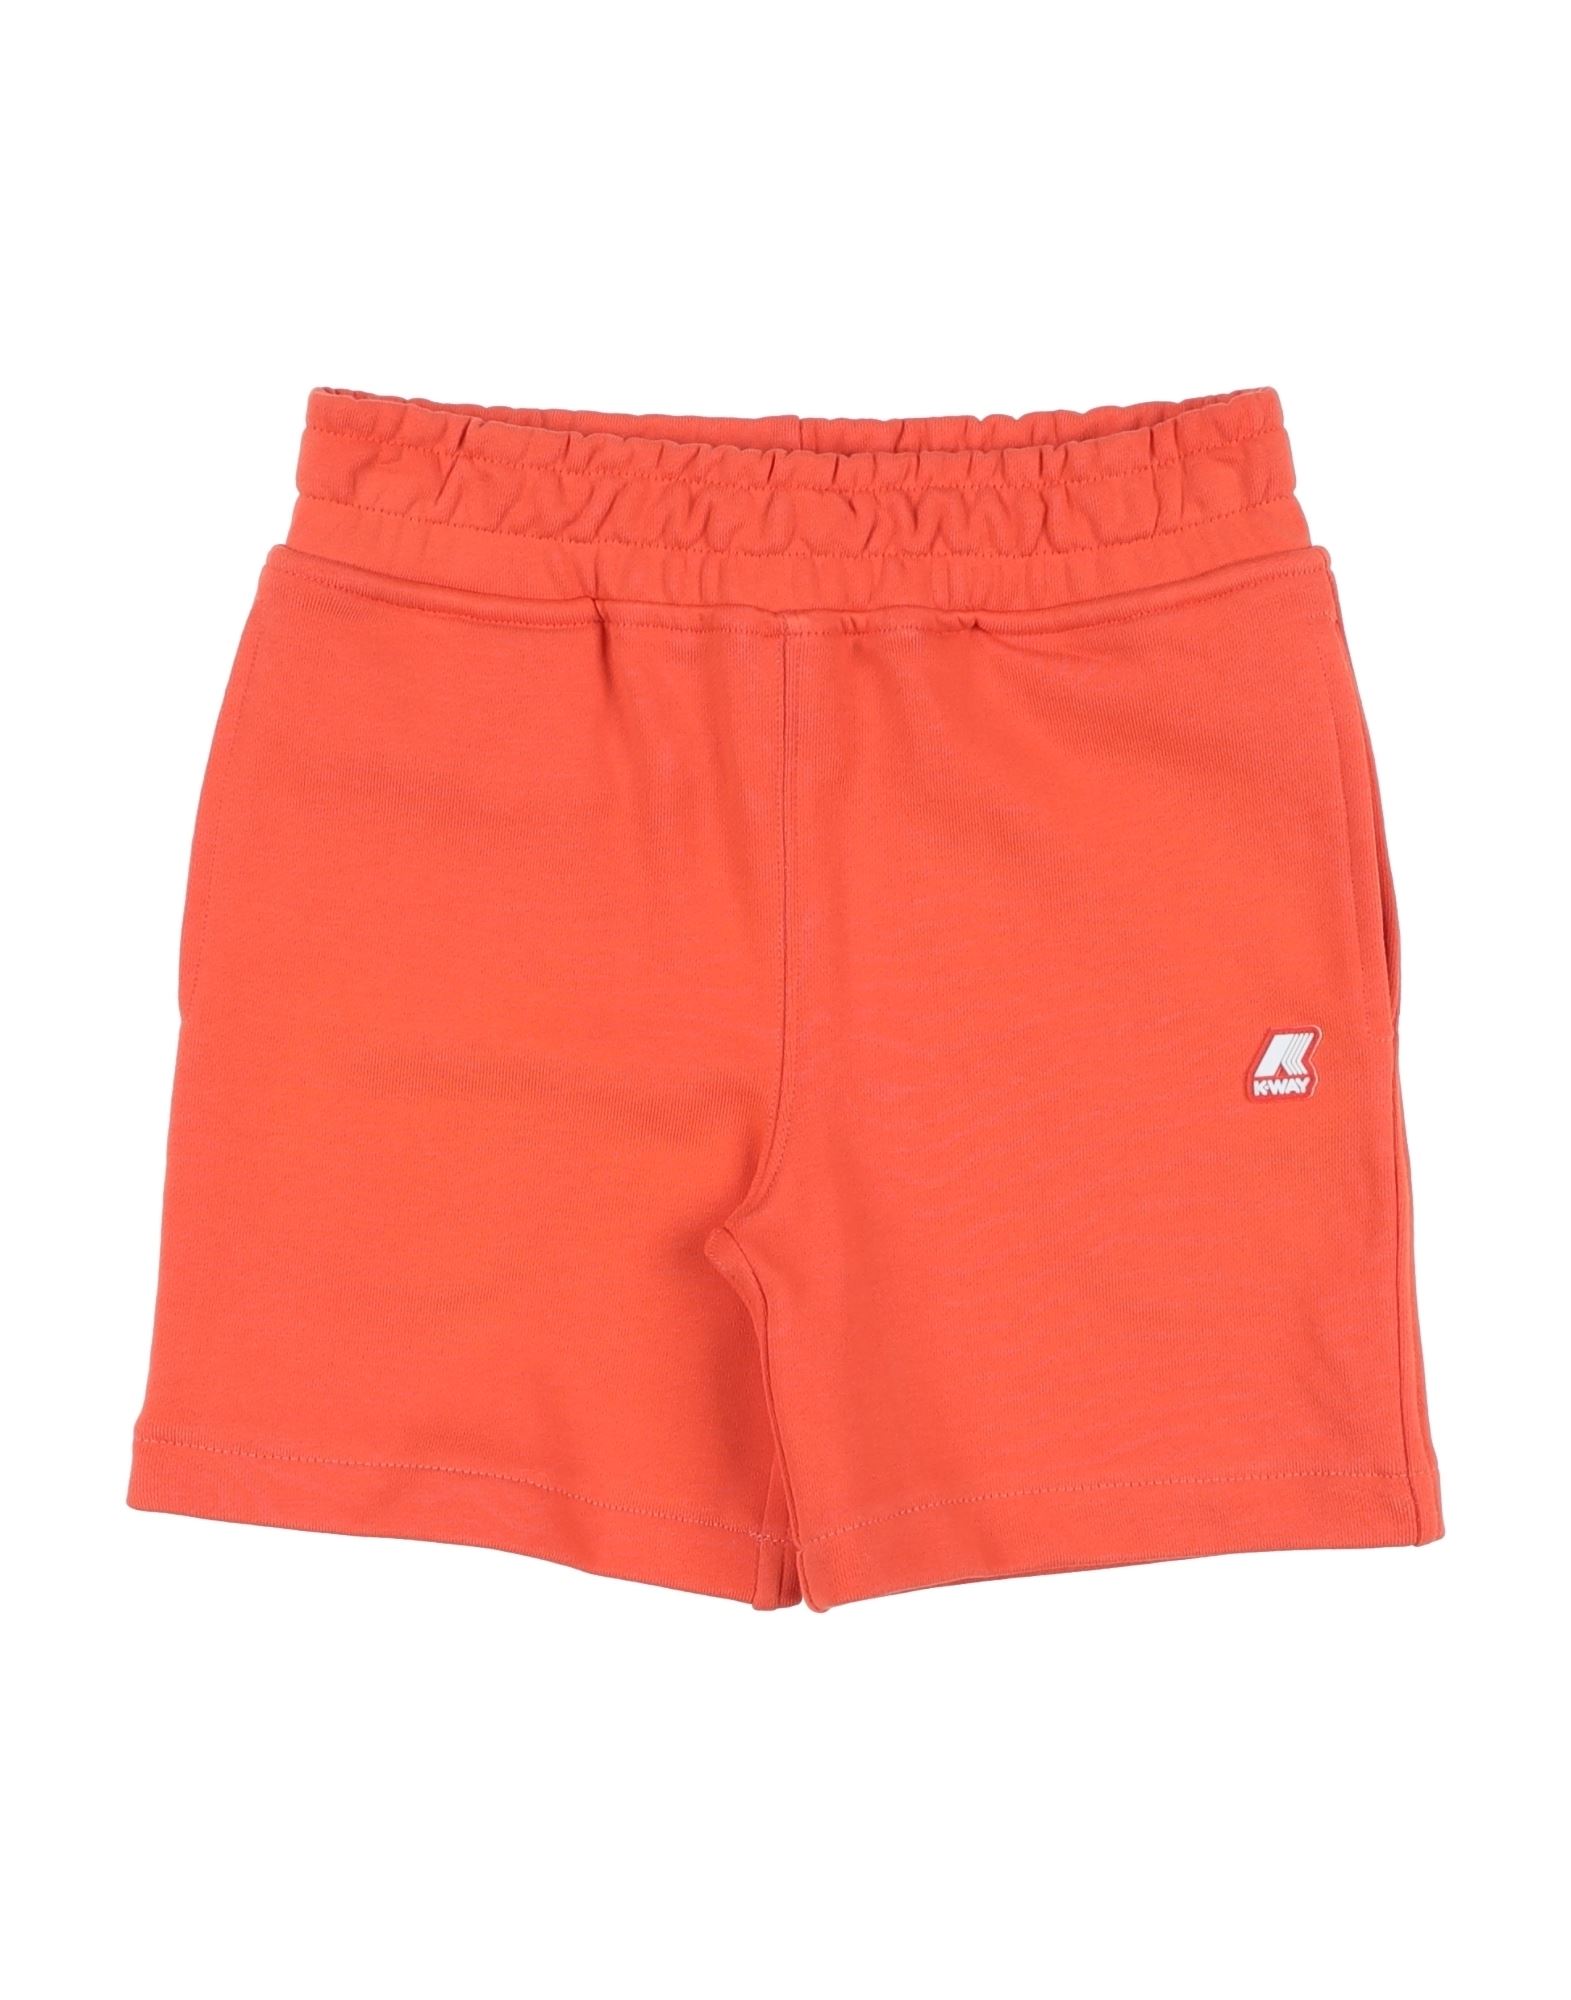 K-way Kids'  Toddler Boy Shorts & Bermuda Shorts Orange Size 6 Cotton